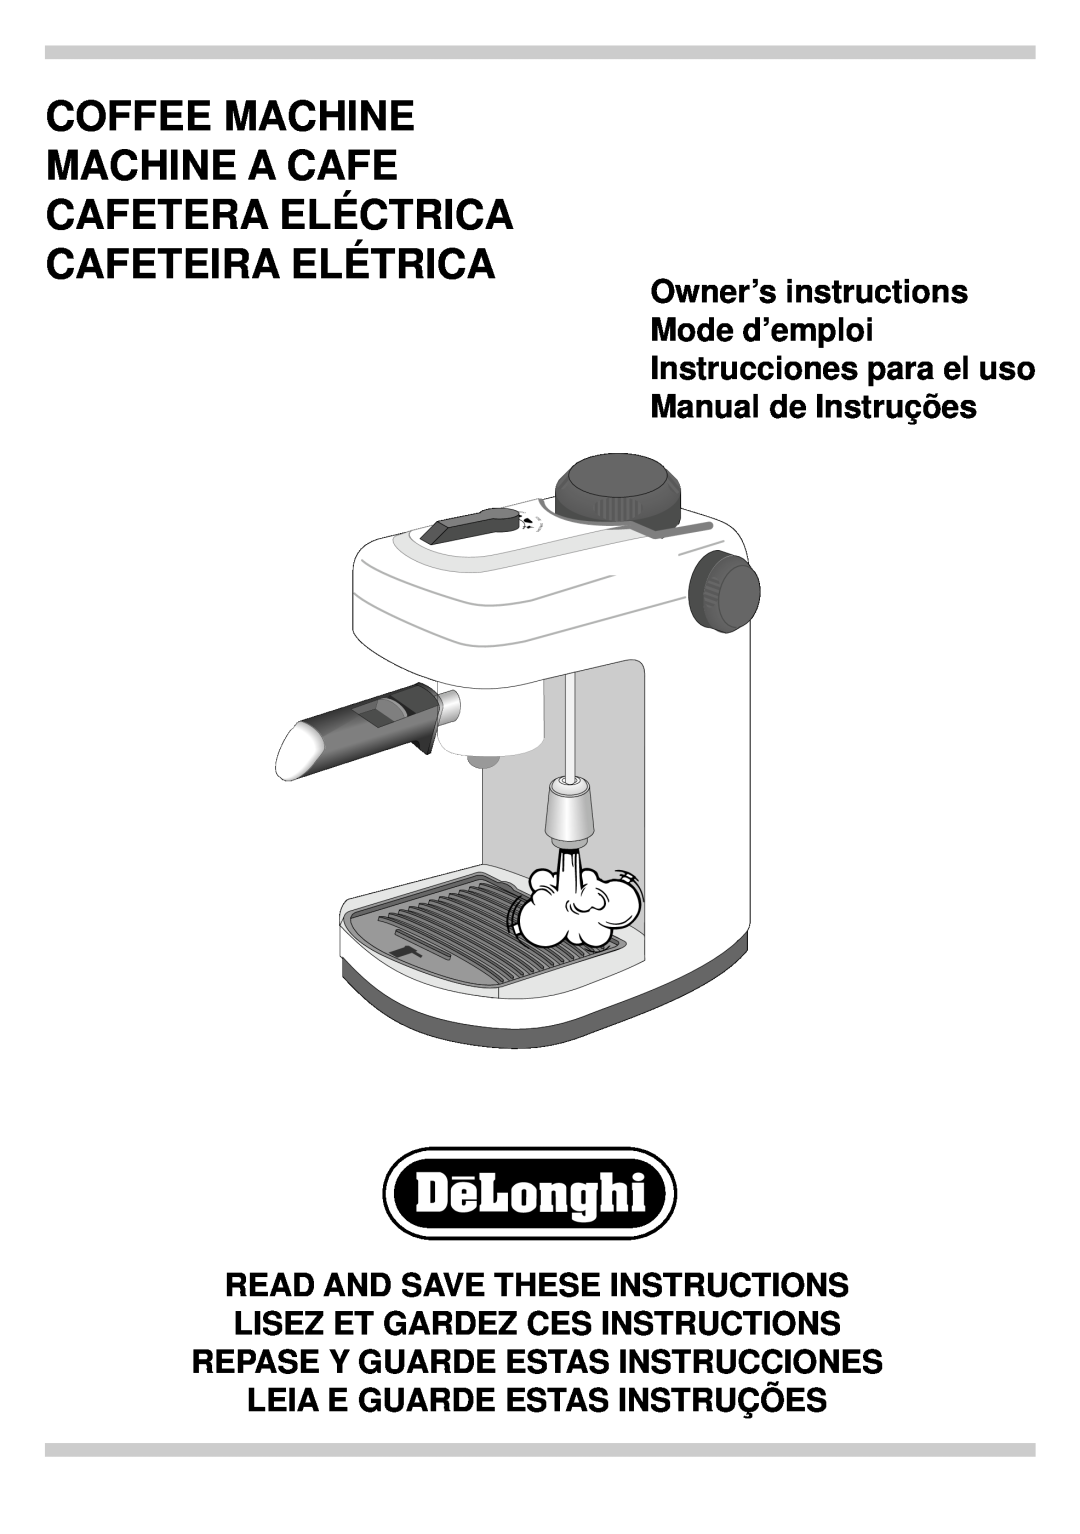 DeLonghi BAR6 manual Coffee Machine Machine A Cafe Cafetera Eléctrica, Cafeteira Elétrica, Leia E Guarde Estas Instruções 